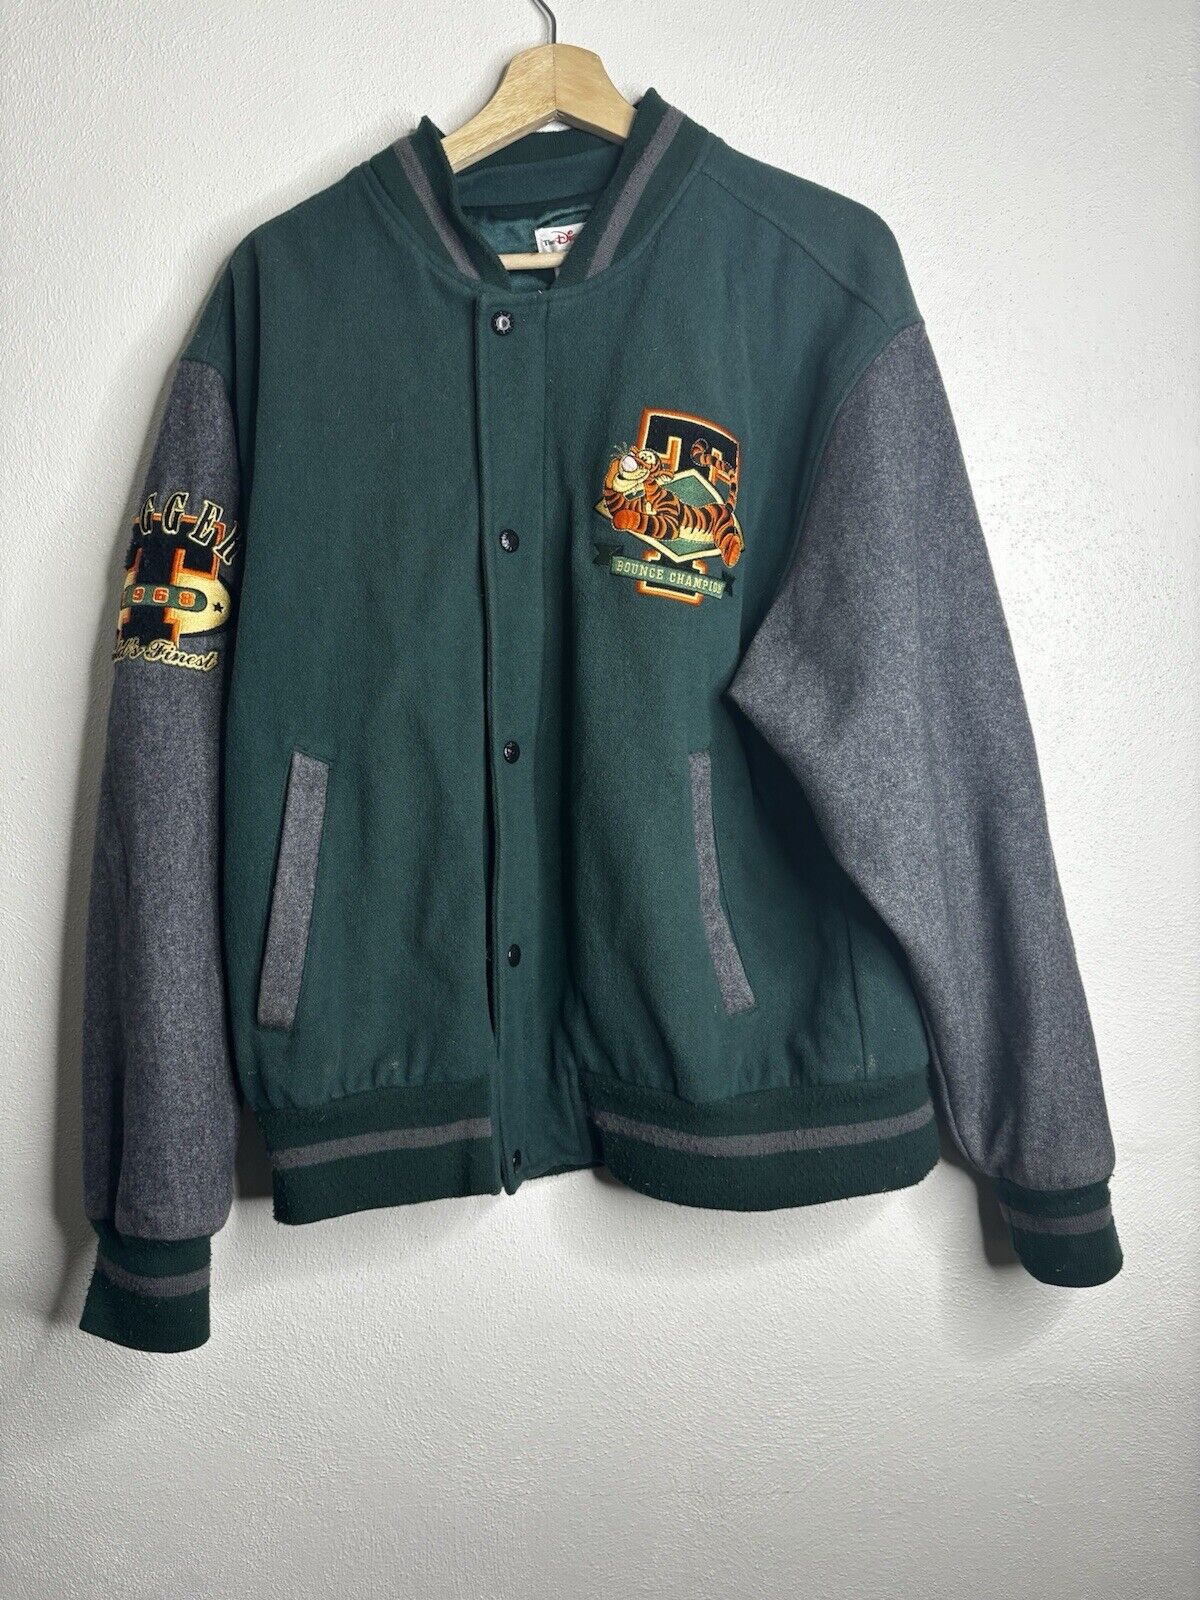 Vintage Disney Tigger Varsity Jacket Men’s Size Medium Green